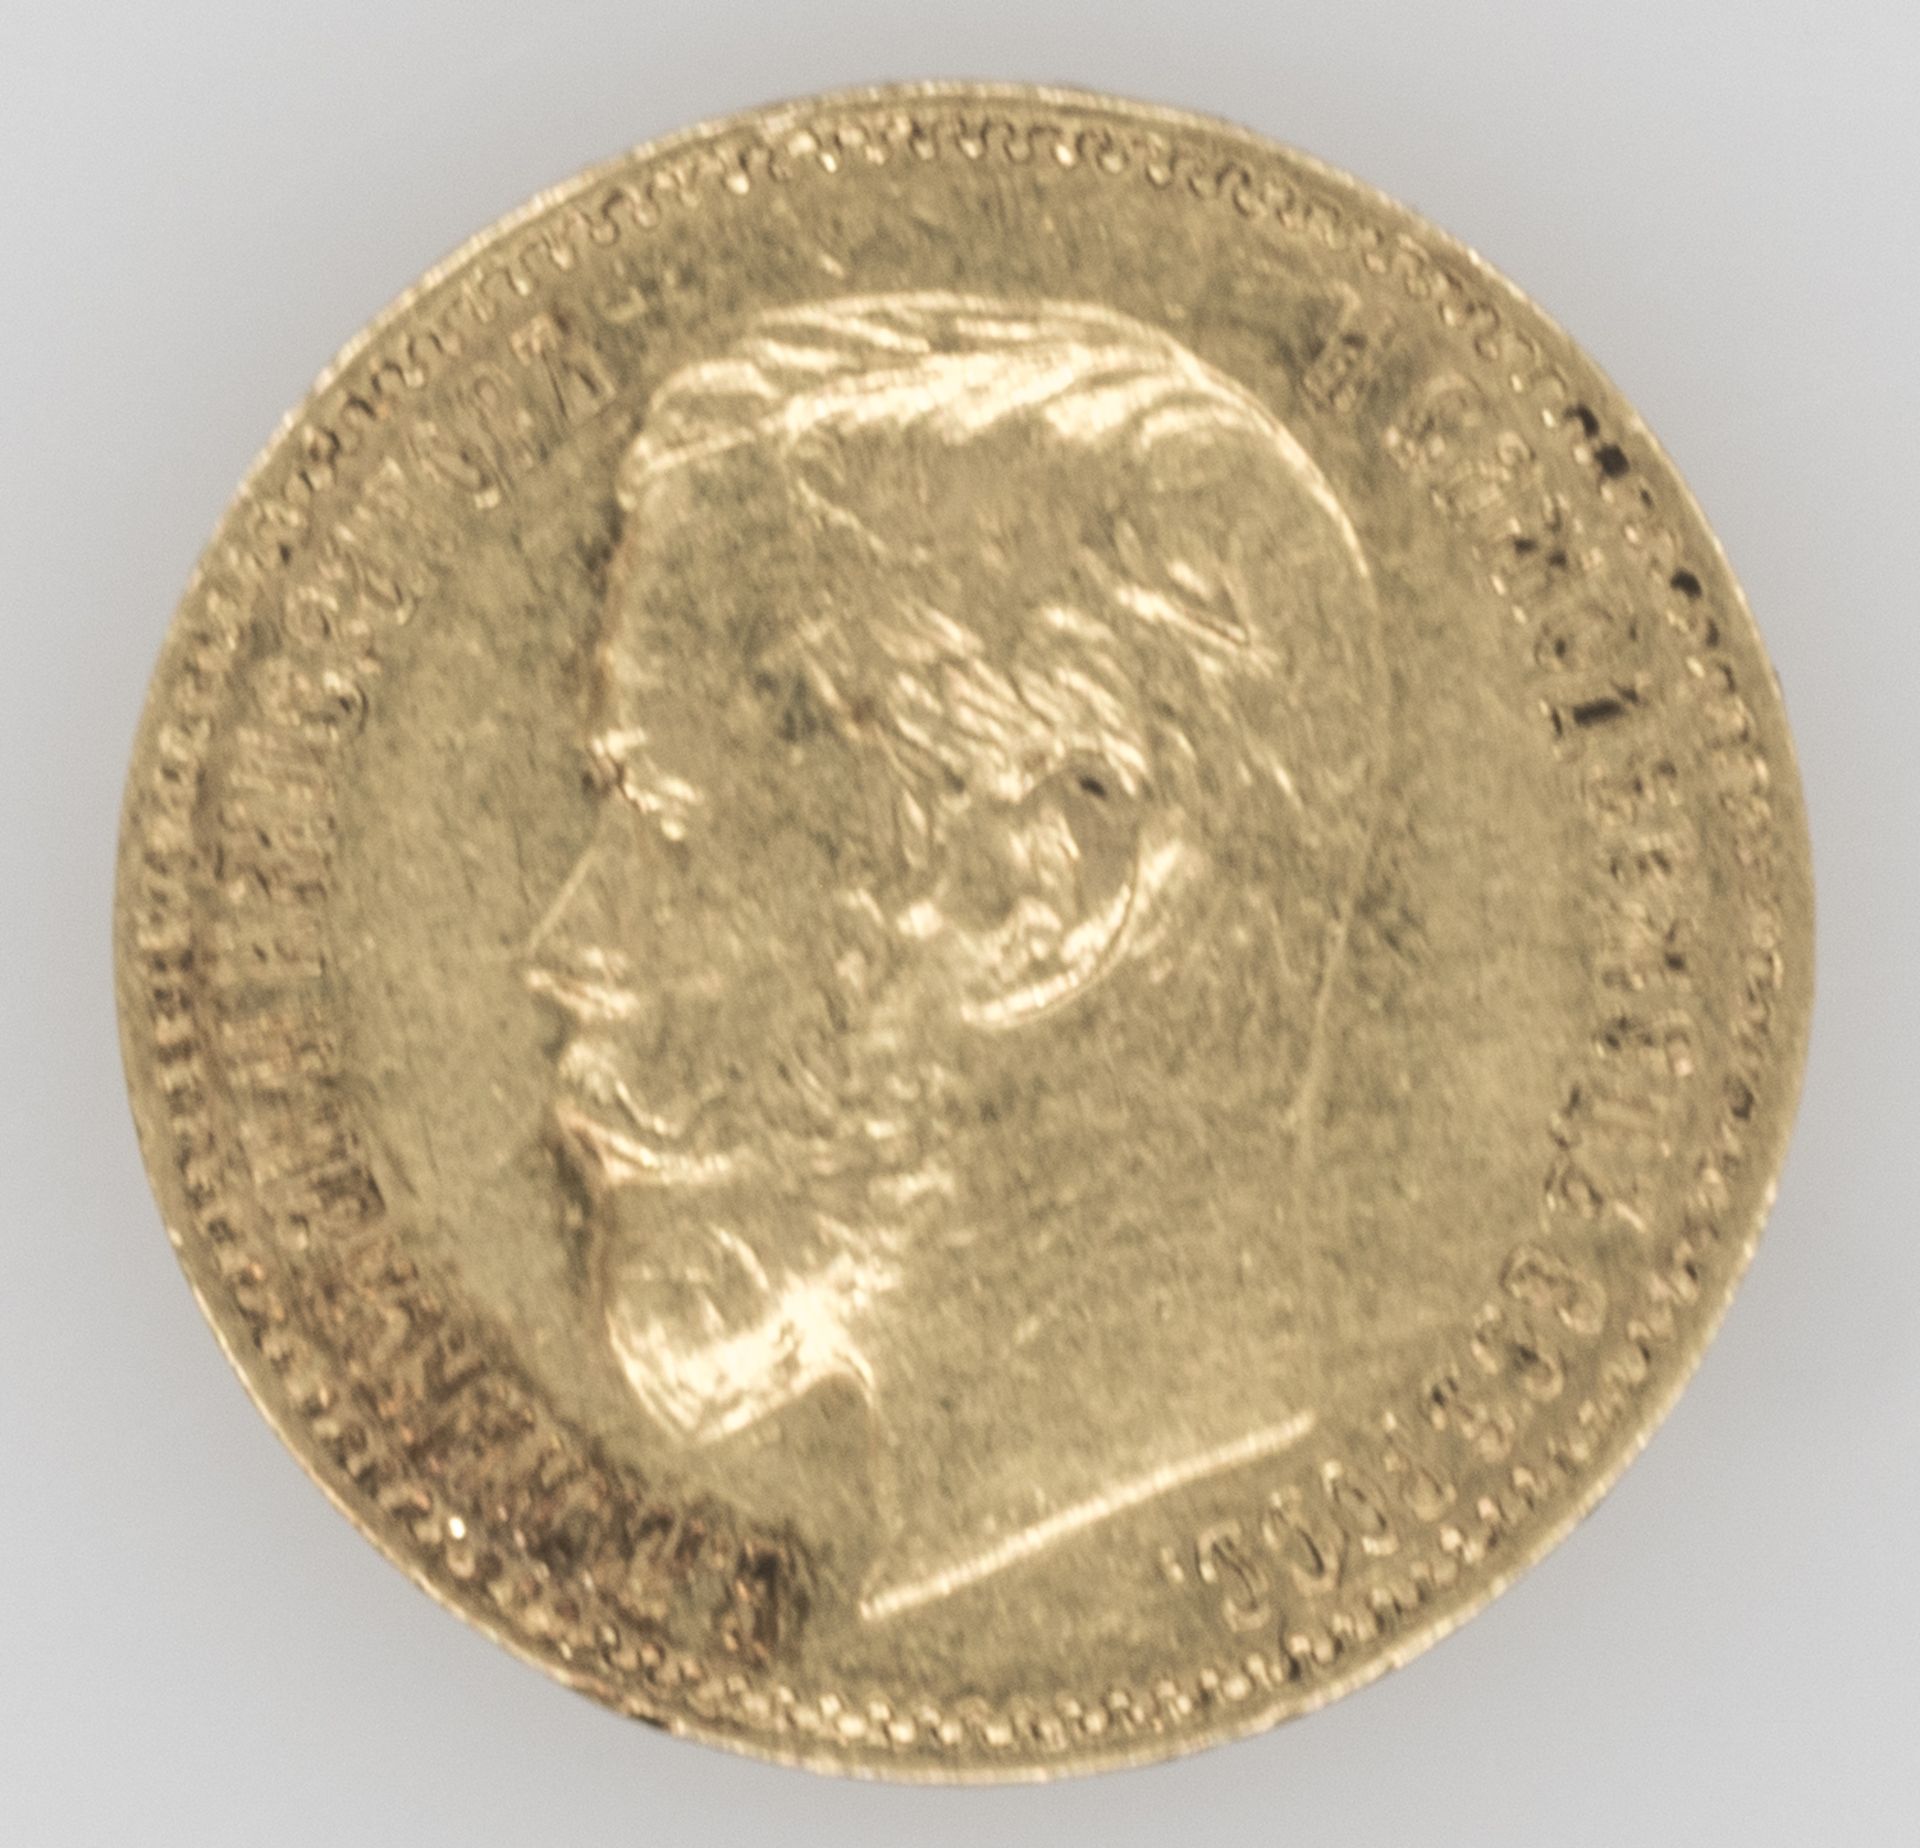 Russland 1897 - 1911, 5 Rubel - Goldmünze "Zar Nikolaus II.". Gold 900/1000. Gewicht: ca. 43 g.